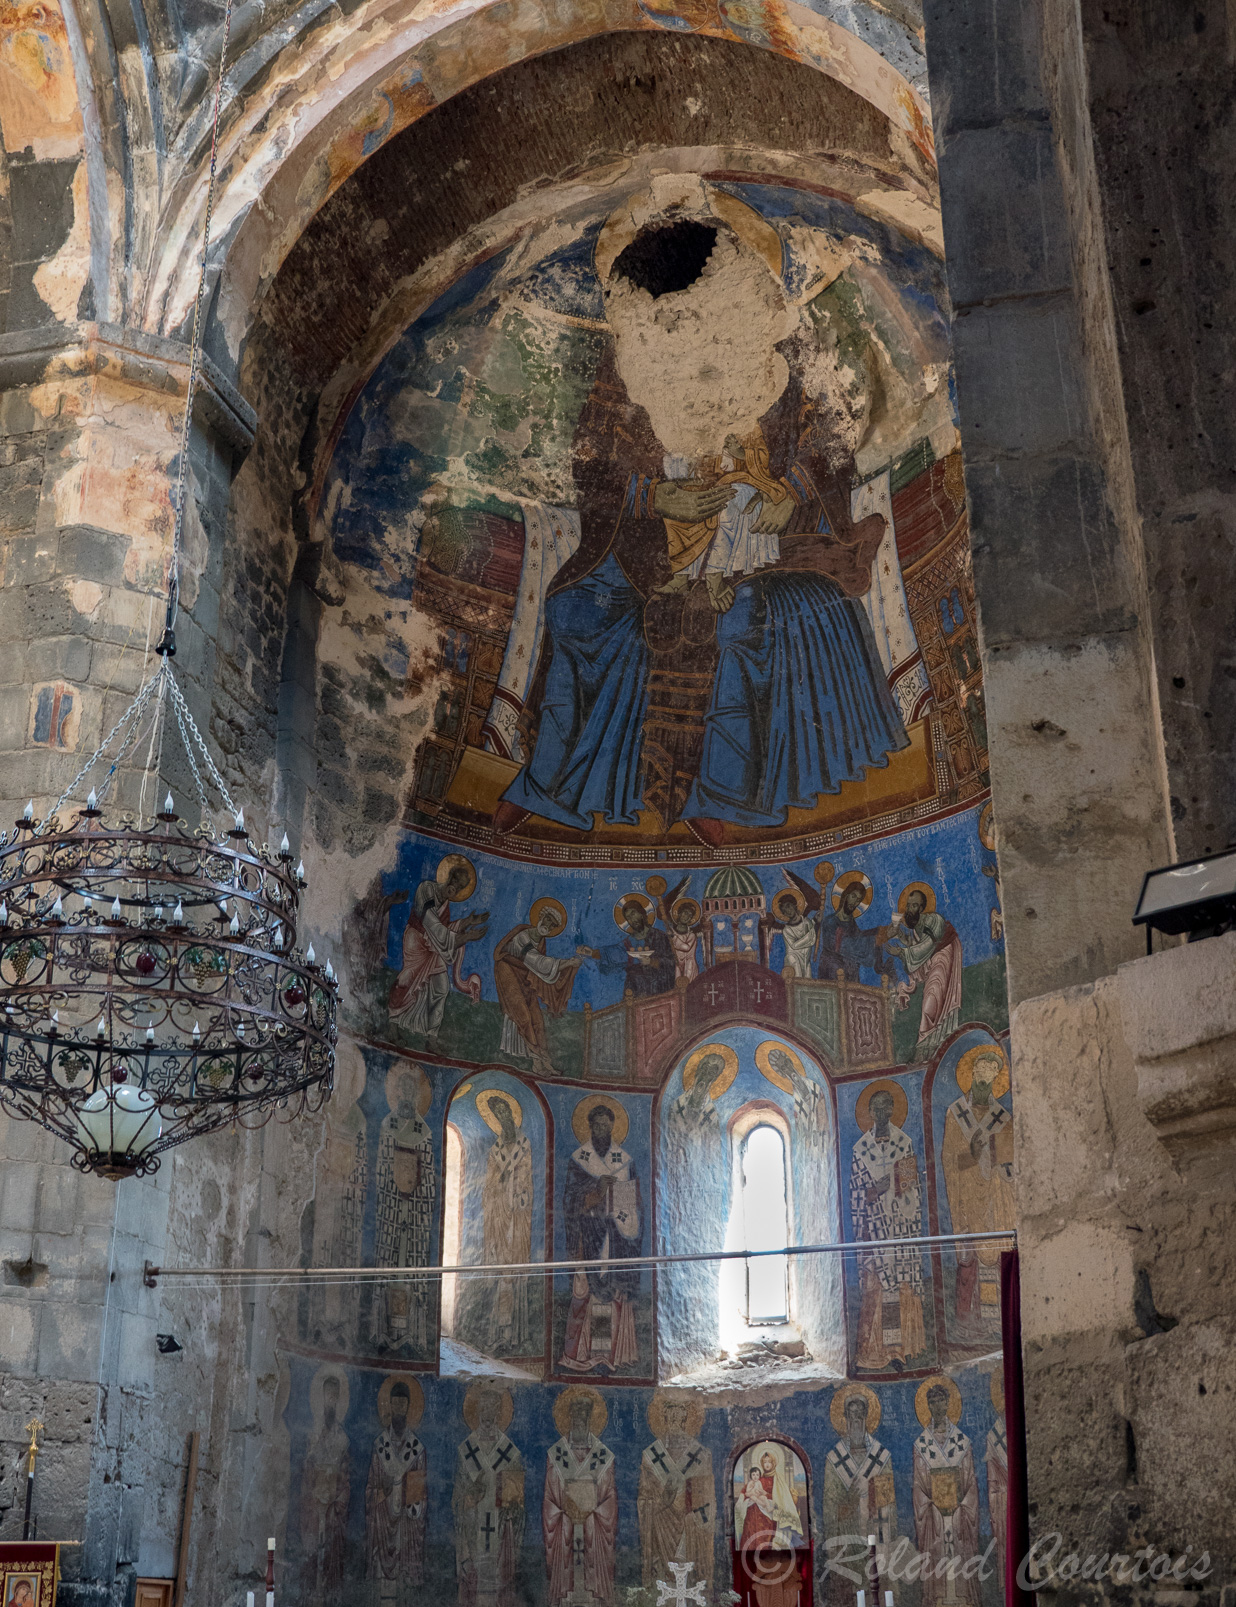 Monastère d'Akhtala. Cette église est renommée pour ses fresques elle se caractérise par son iconographie riche en thèmes et aux couleurs variées. Une grande représentation de la Vierge à l'enfant surplombe l'autel ; elle a été sévèrement endommagée.